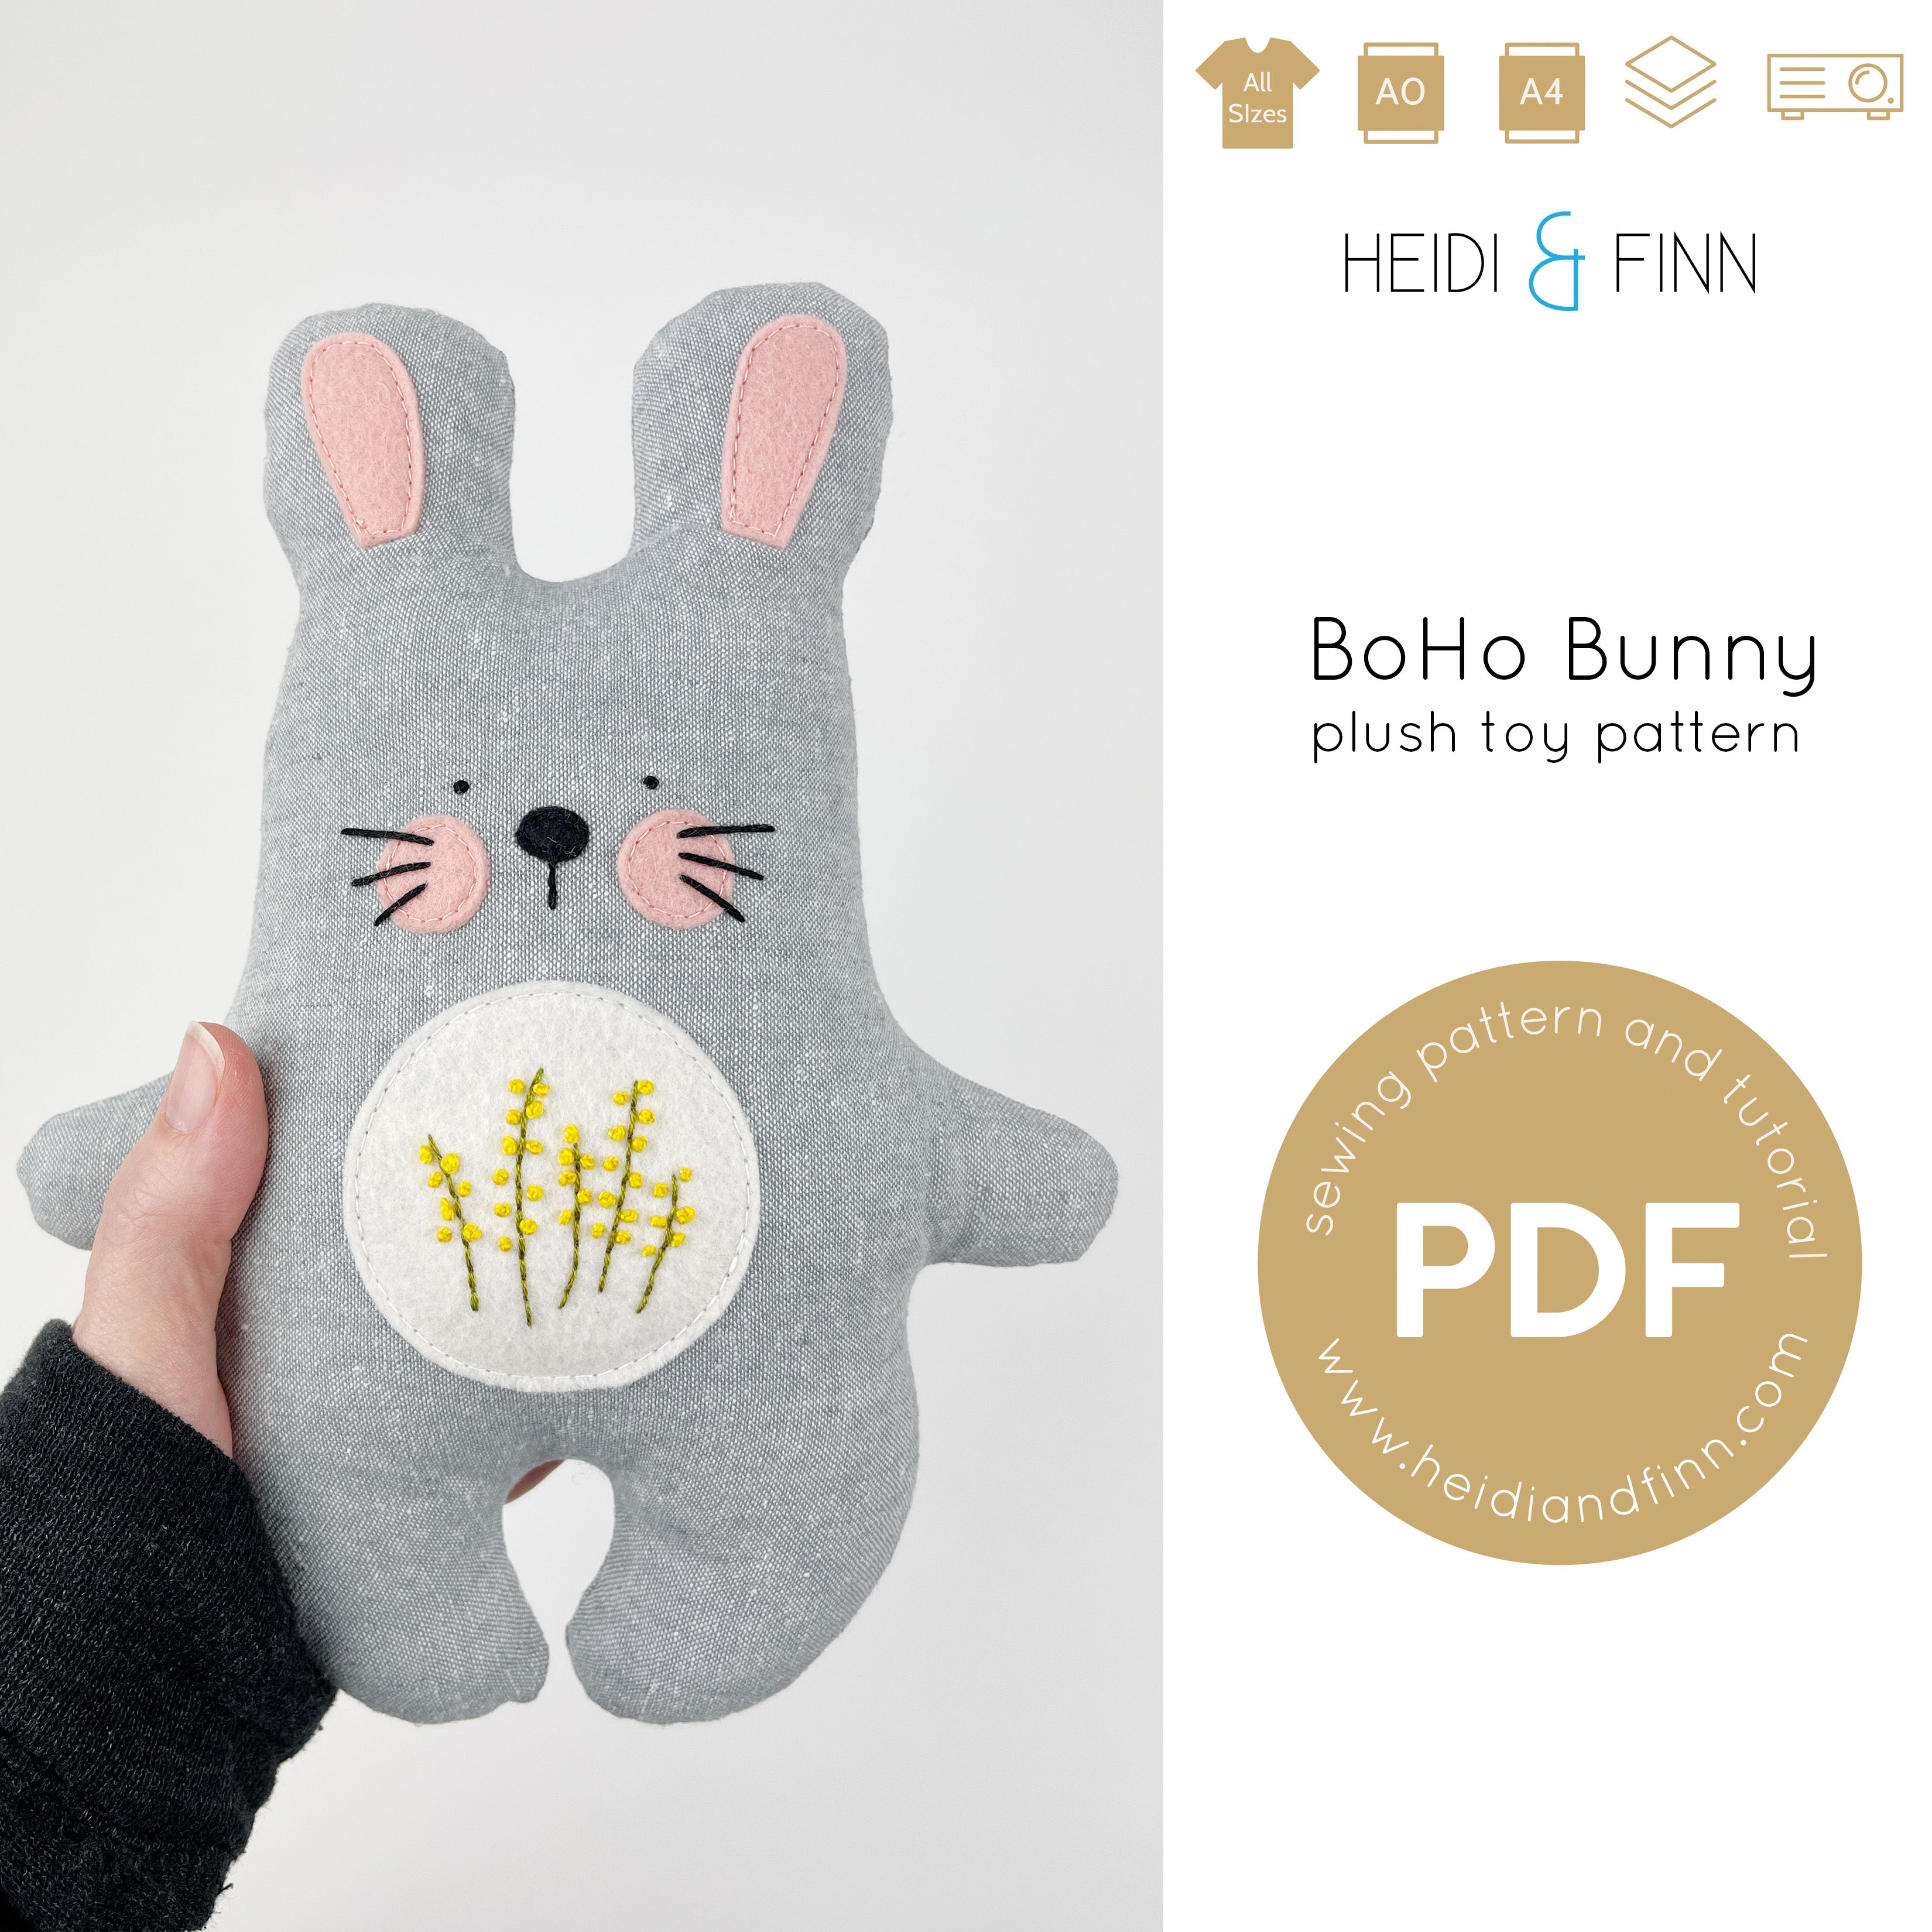 BoHo bunny Plush toy